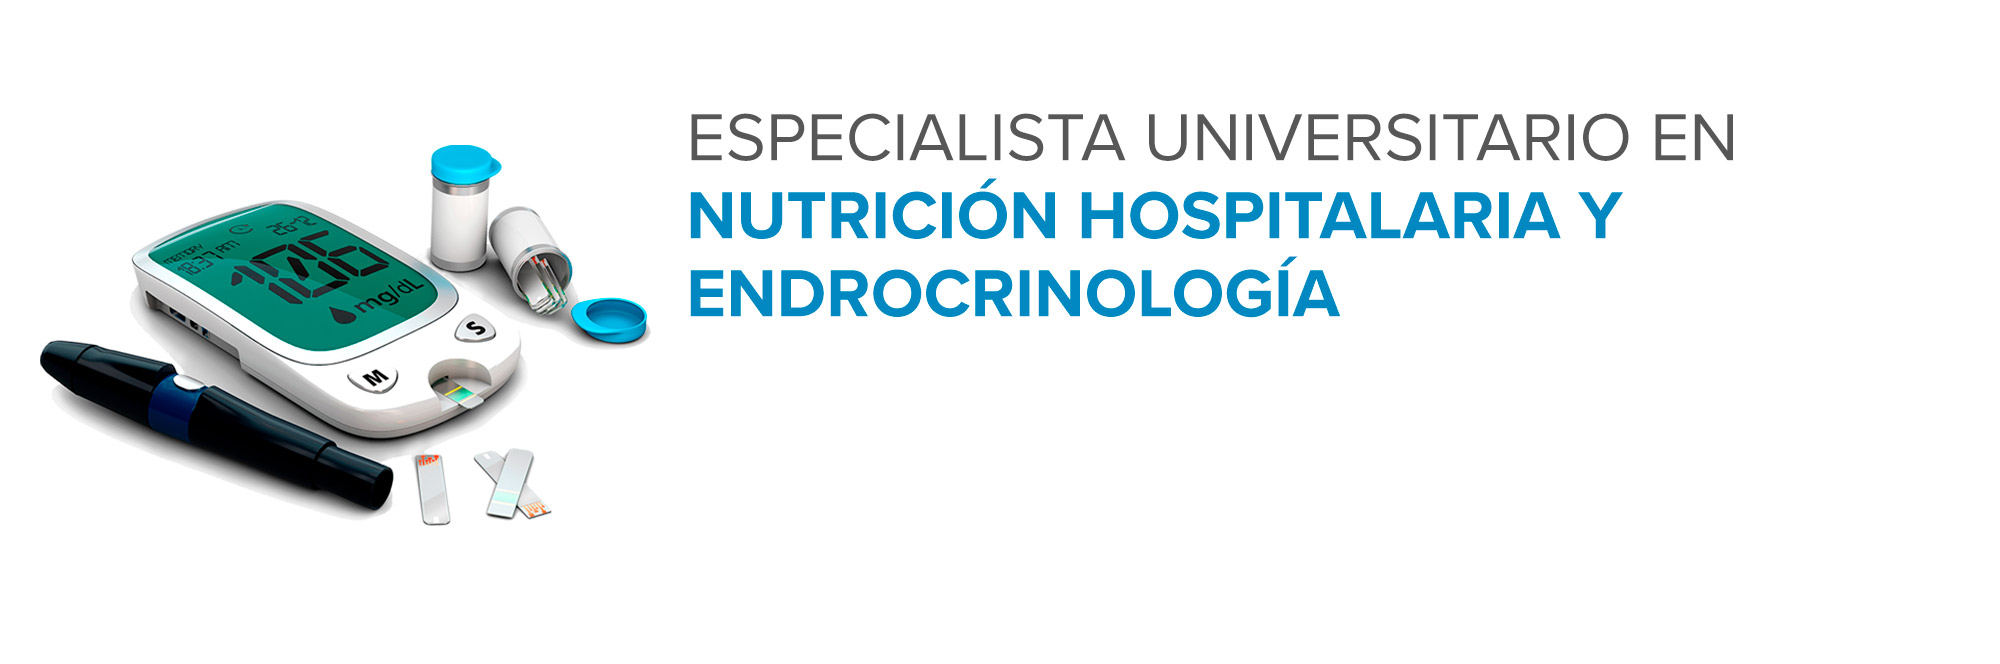 Especialista Universitario en Nutrición Hospitalaria y Endocrinología (CLENDO1)